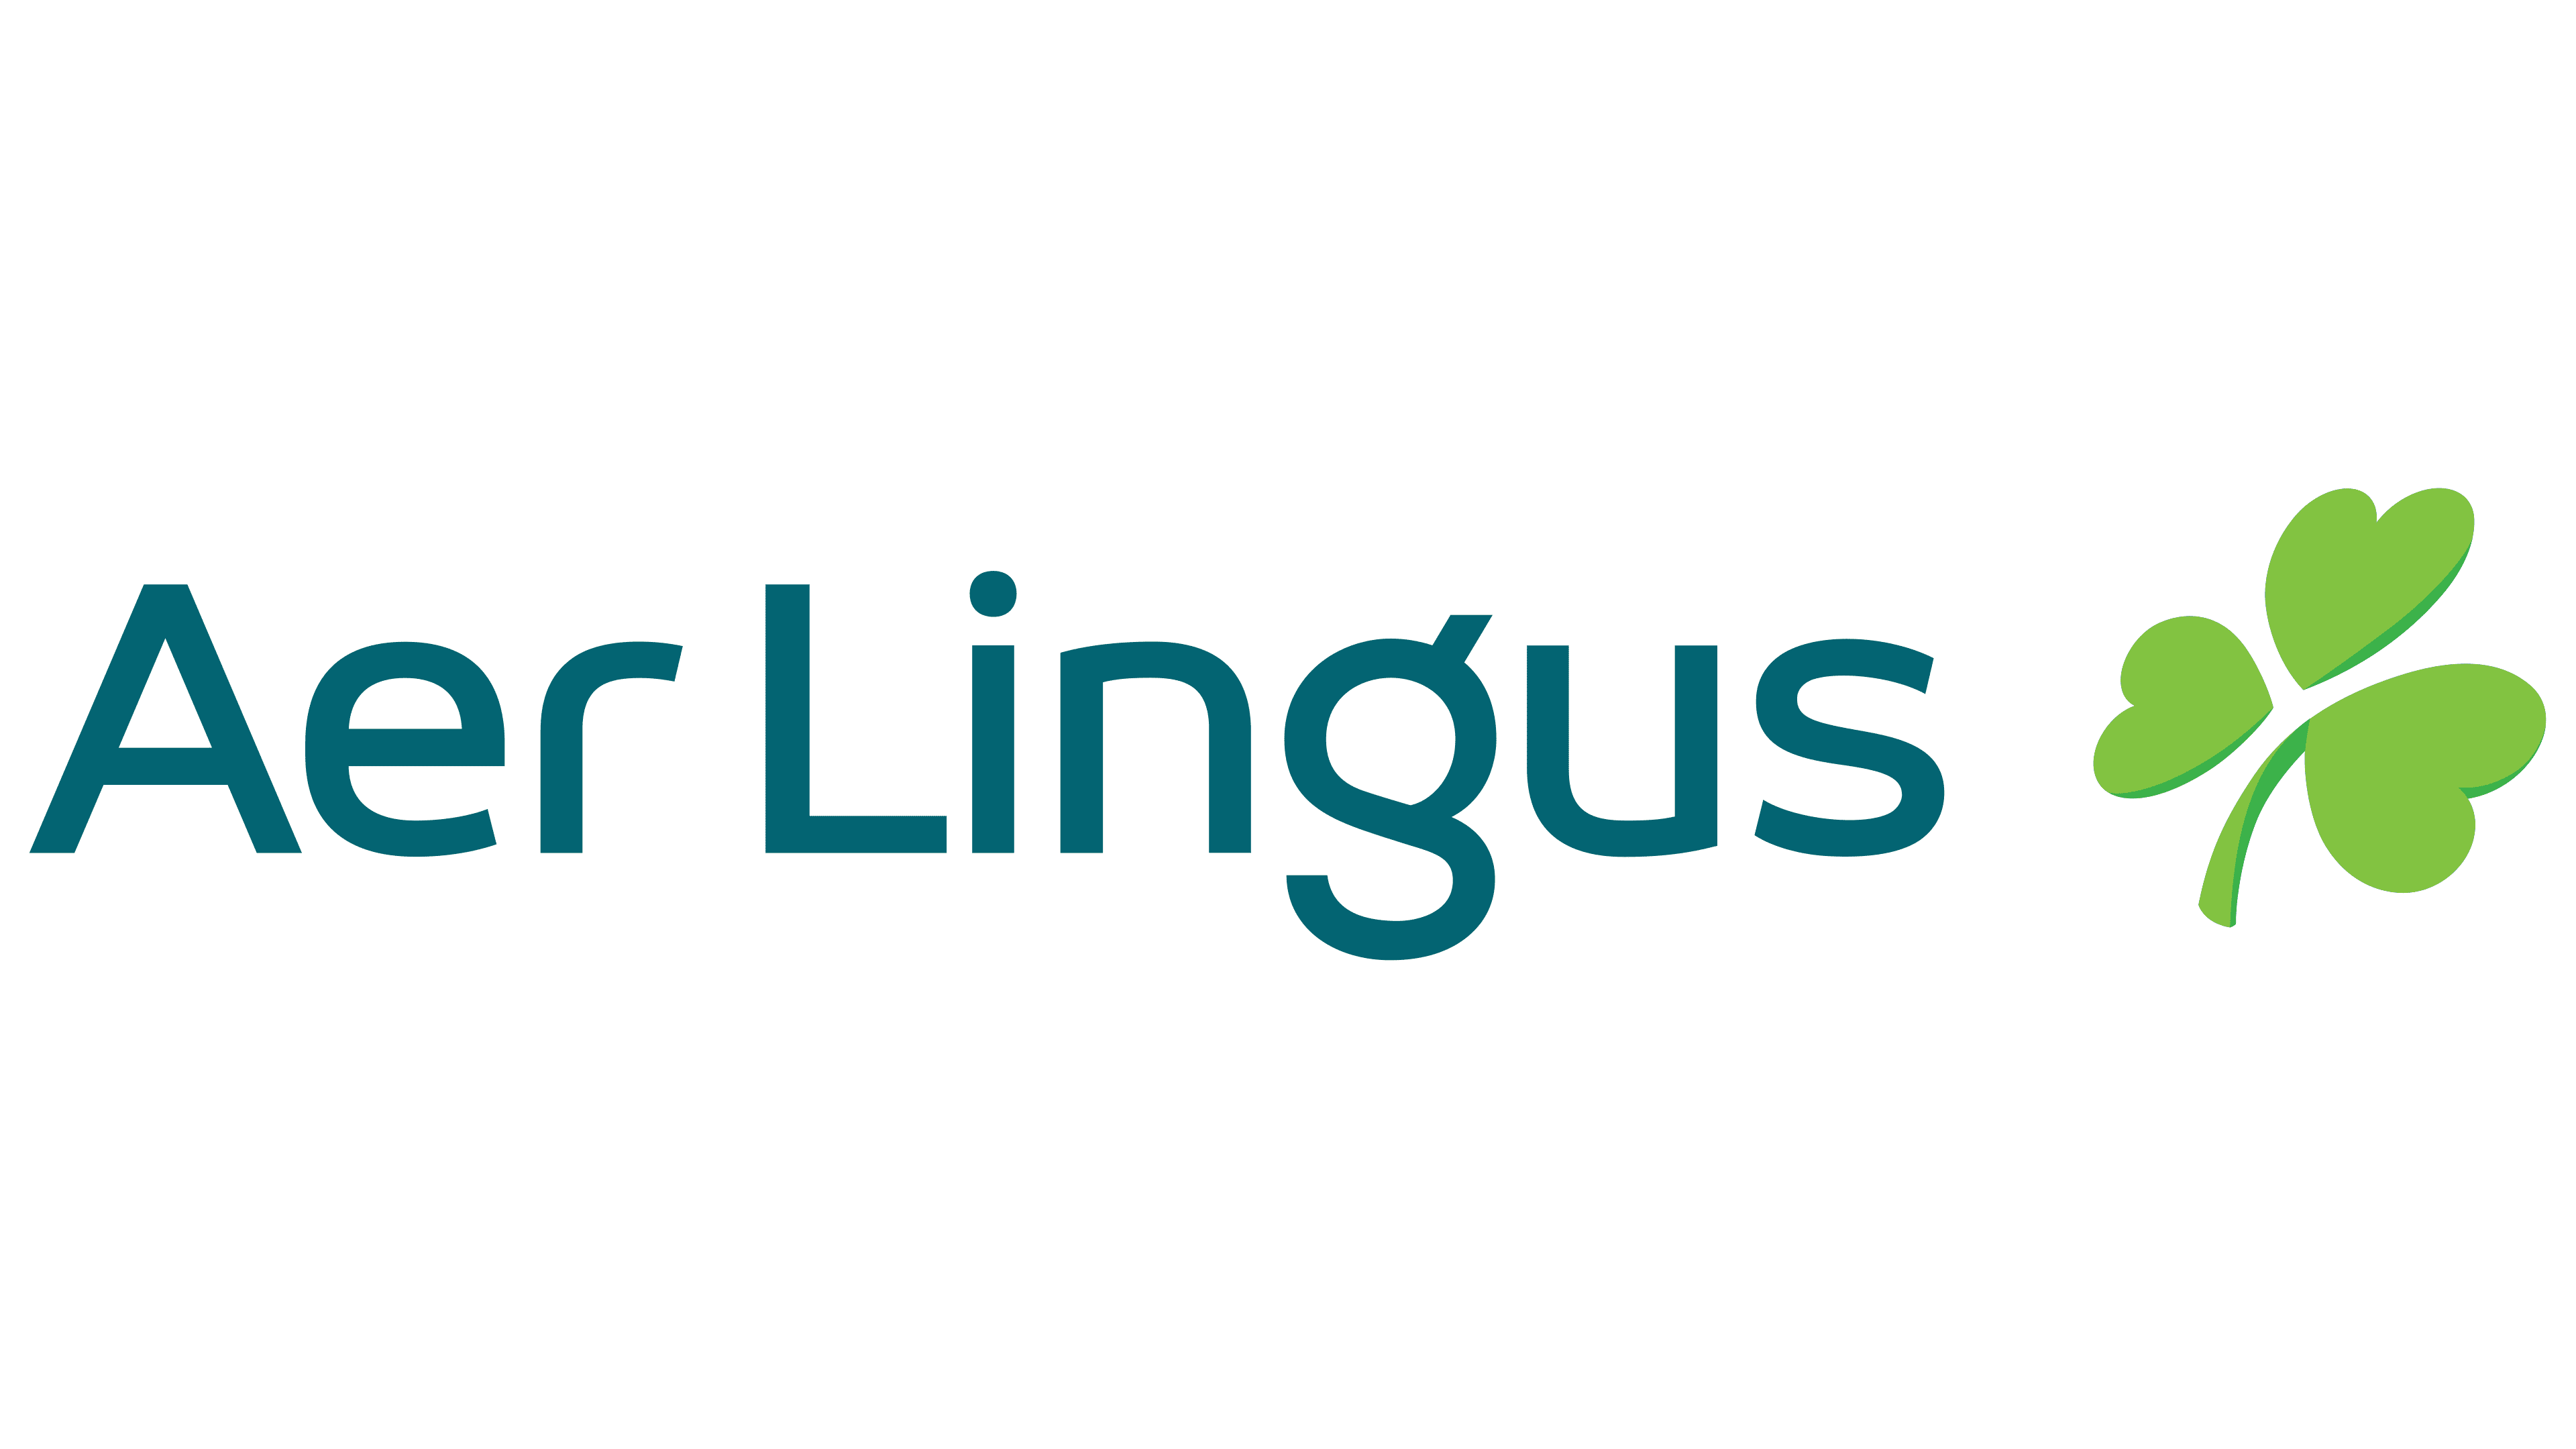 Aer-Lingus-Logo